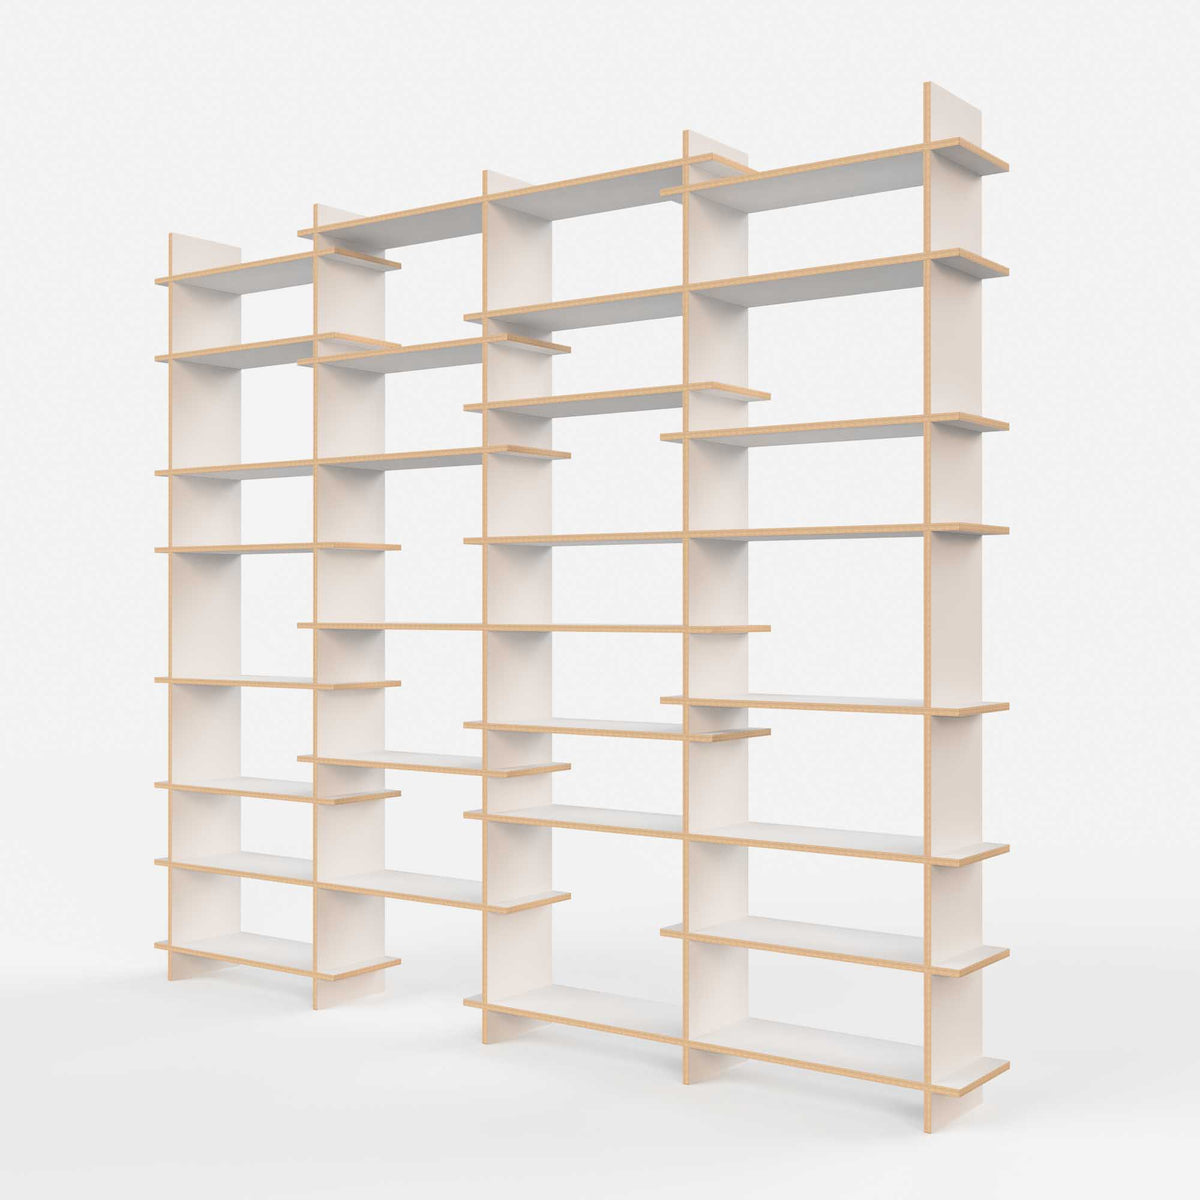 The Shelves 5UR